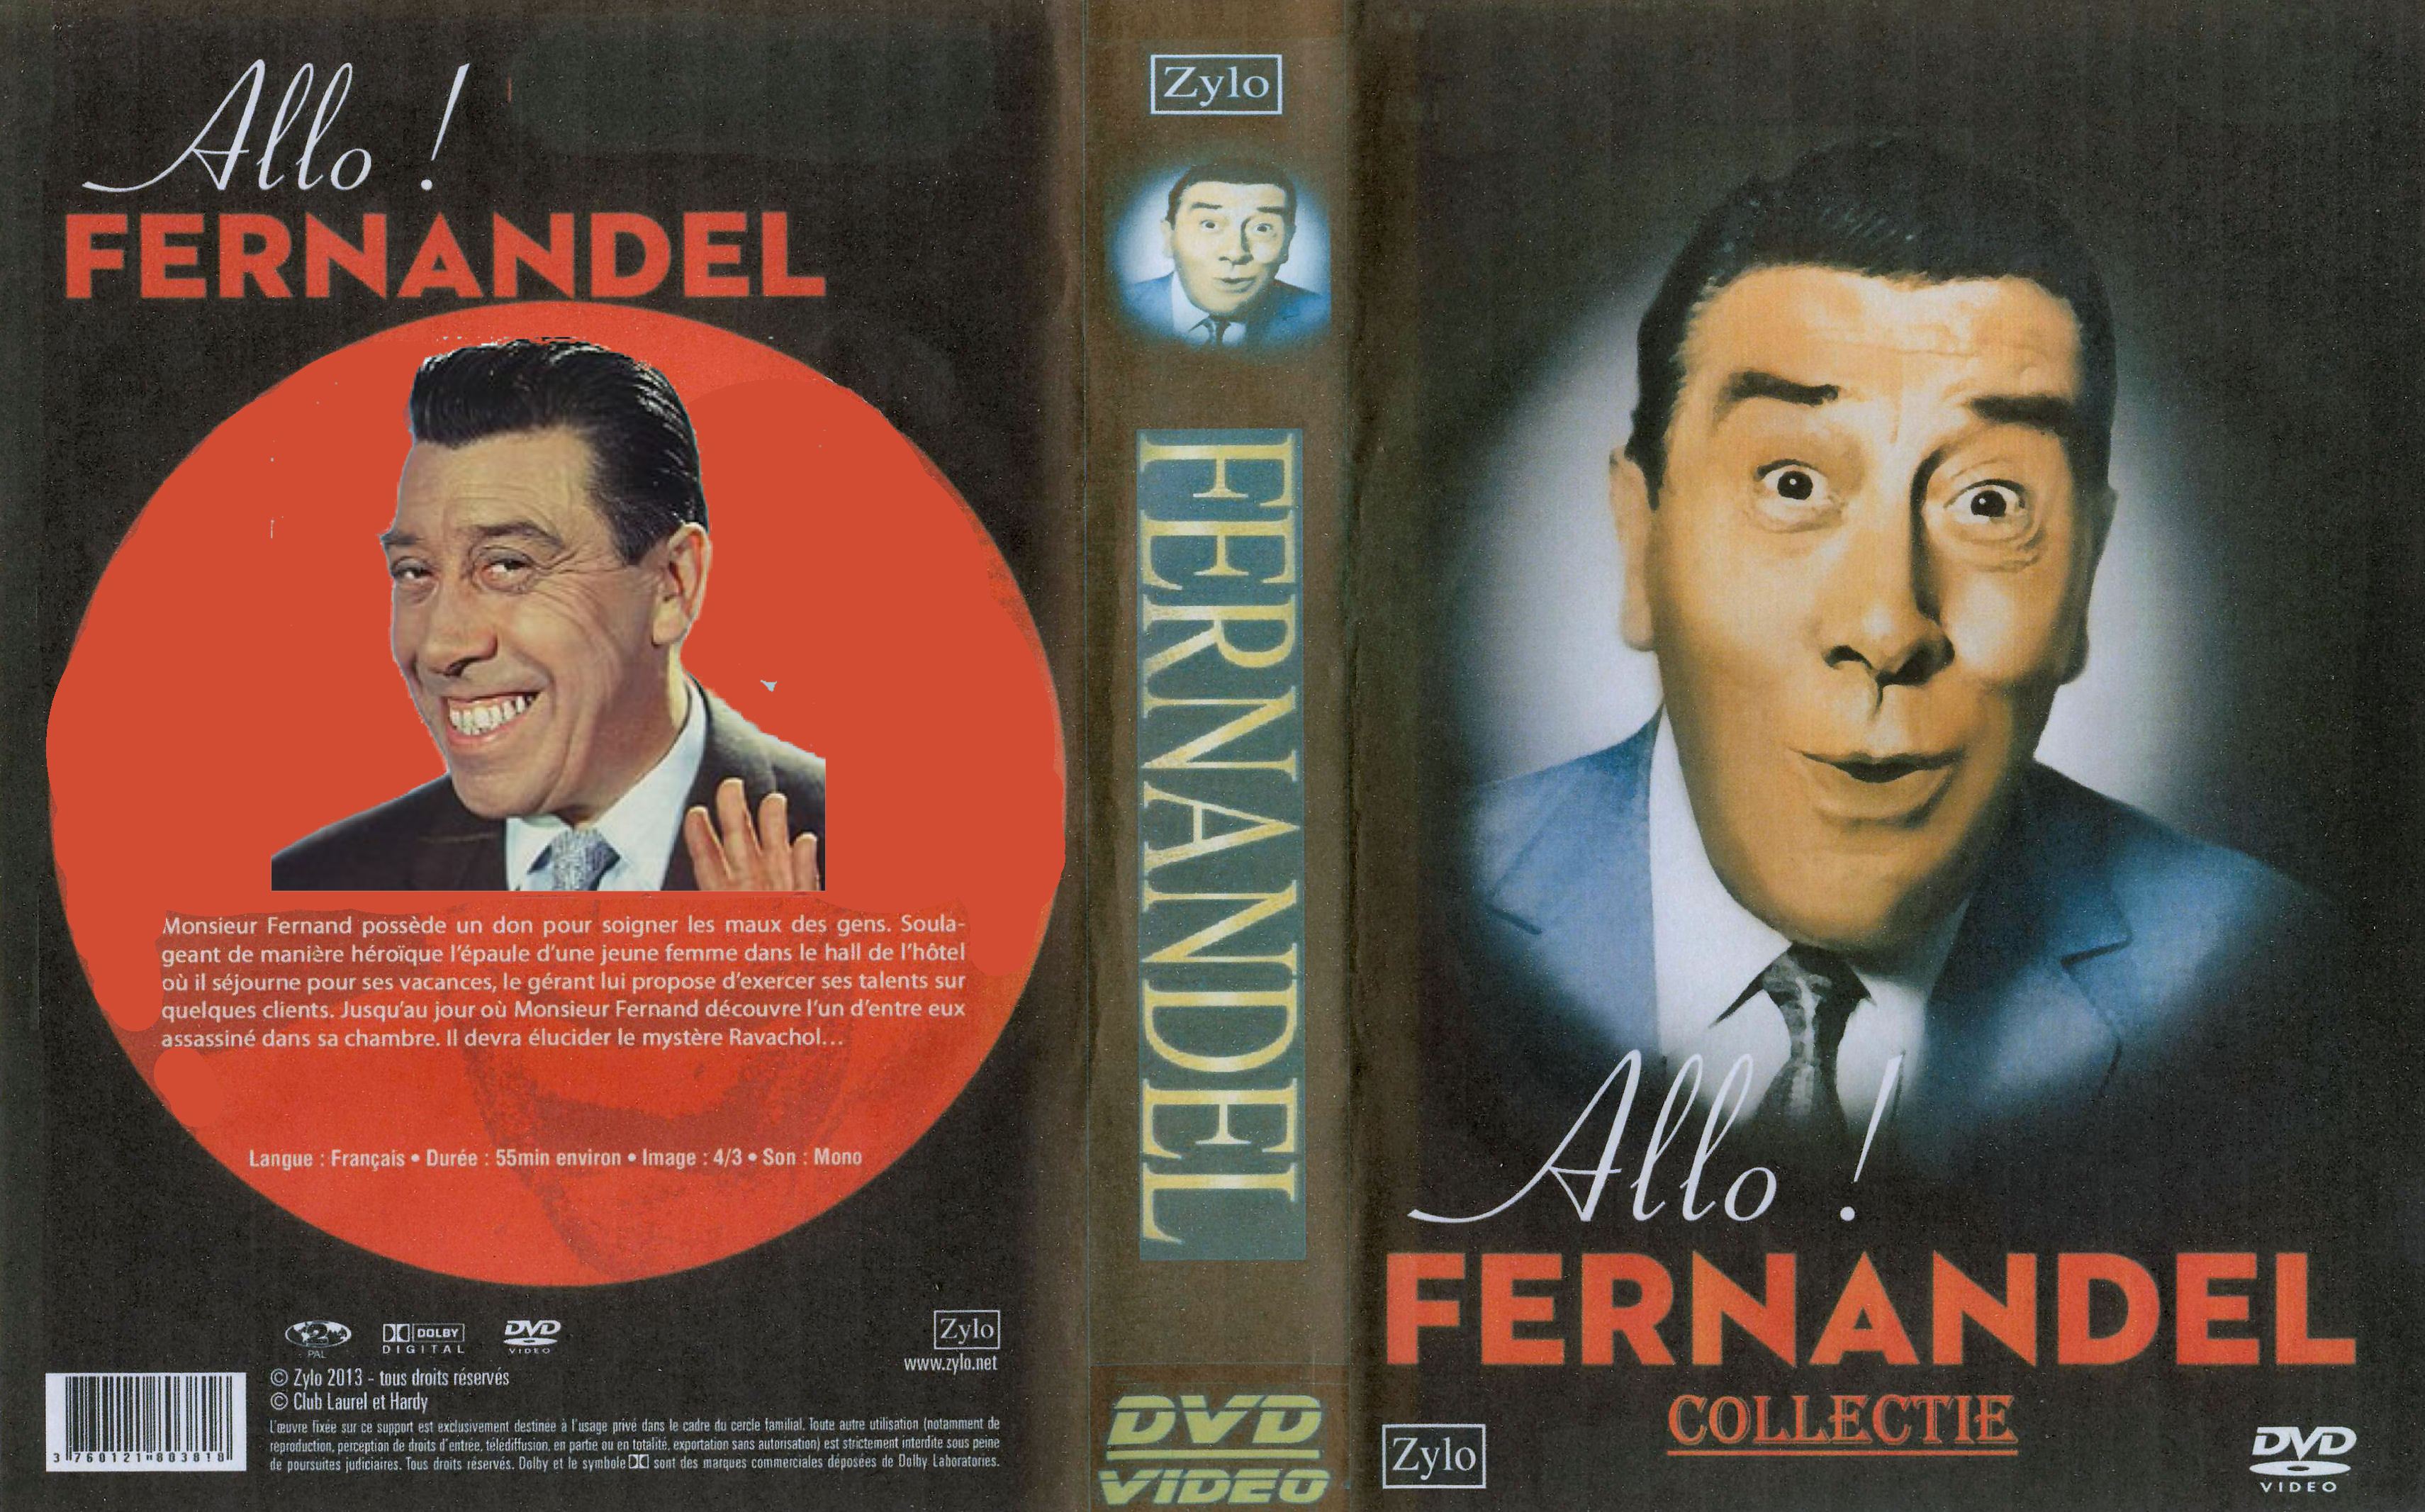 Fernandel Collectie (14 DvD's) -DvD 5